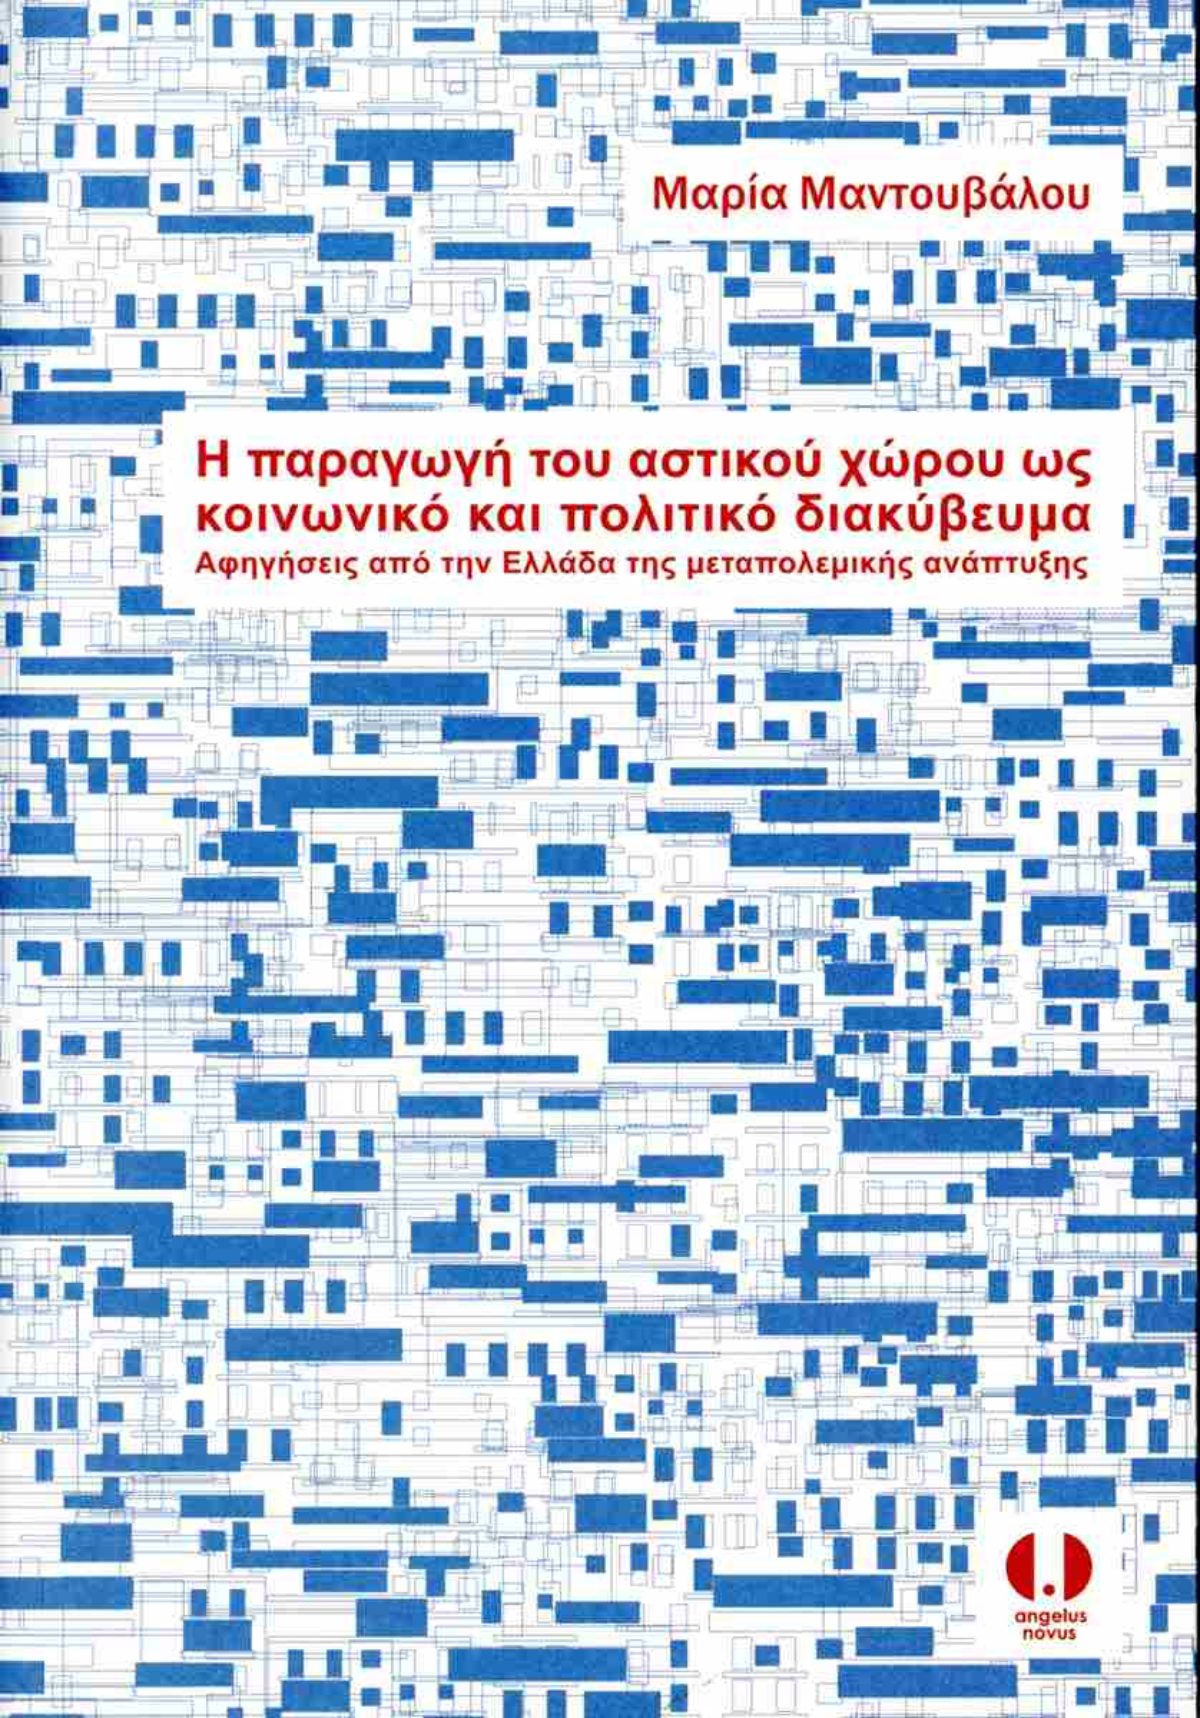 Παρουσίαση βιβλίου με τίτλο “Η παραγωγή του αστικού χώρου ως κοινωνικό και πολιτικό διακύβευμα. Αφηγήσεις από την Ελλάδα της μεταπολεμικής ανάπτυξης” της Μαρίας Μαντουβάλου, Ομότιμης Καθηγήτριας της Σχολής Αρχιτεκτόνων Μηχανικών ΕΜΠ, (14.12.2023)